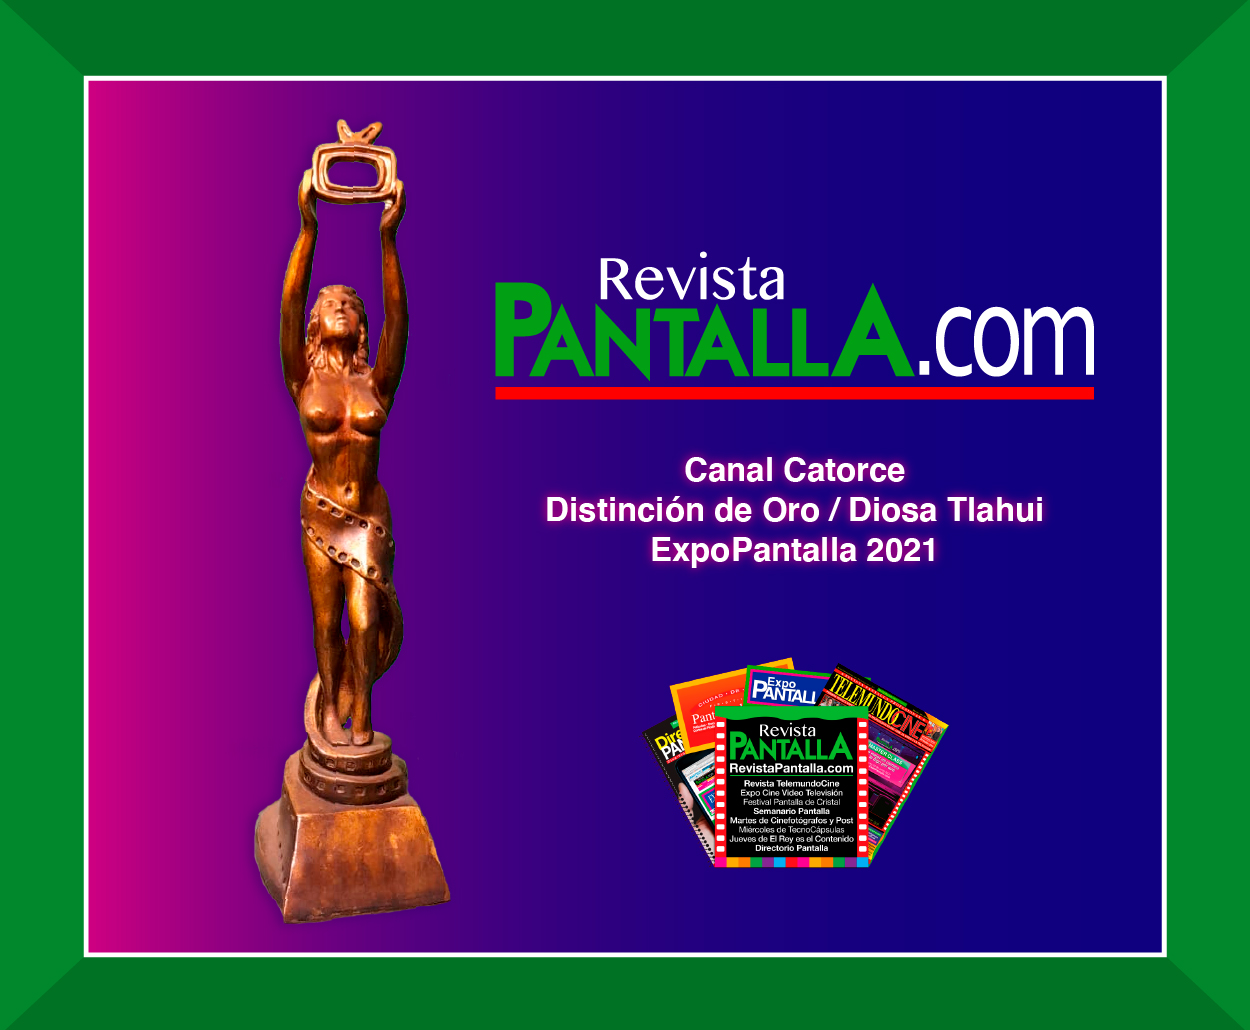 Canal Catorce del SPR, dirigido por Leticia Salas, recibe la distinción de Oro/Diosa Tlahui, en Expopantalla 2021